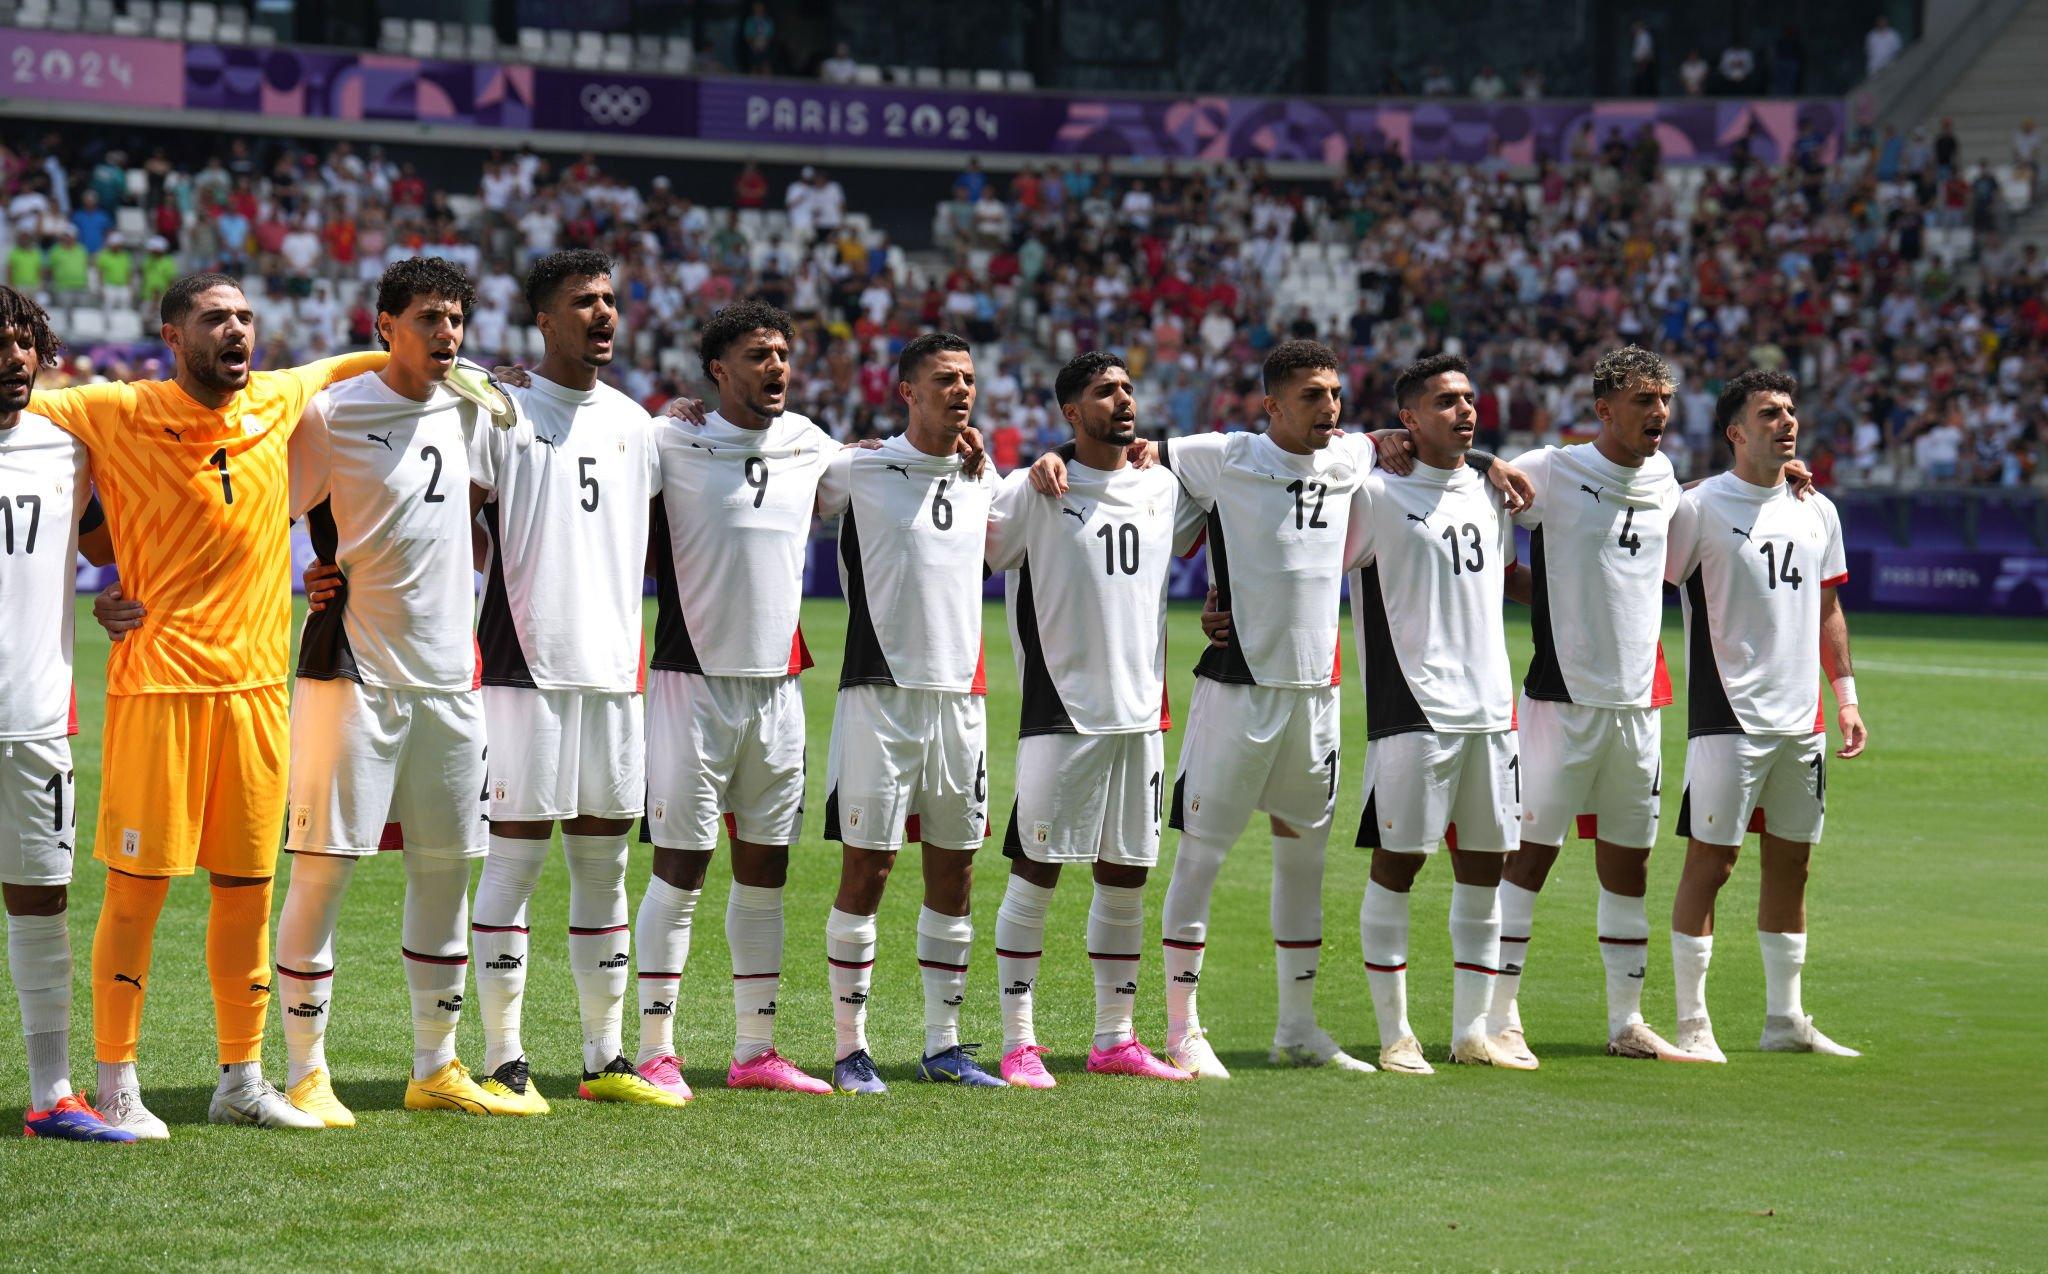 Egito avança para as semifinais do futebol masculino (Foto: Divulgação/Federação Egípcia de Futebol)